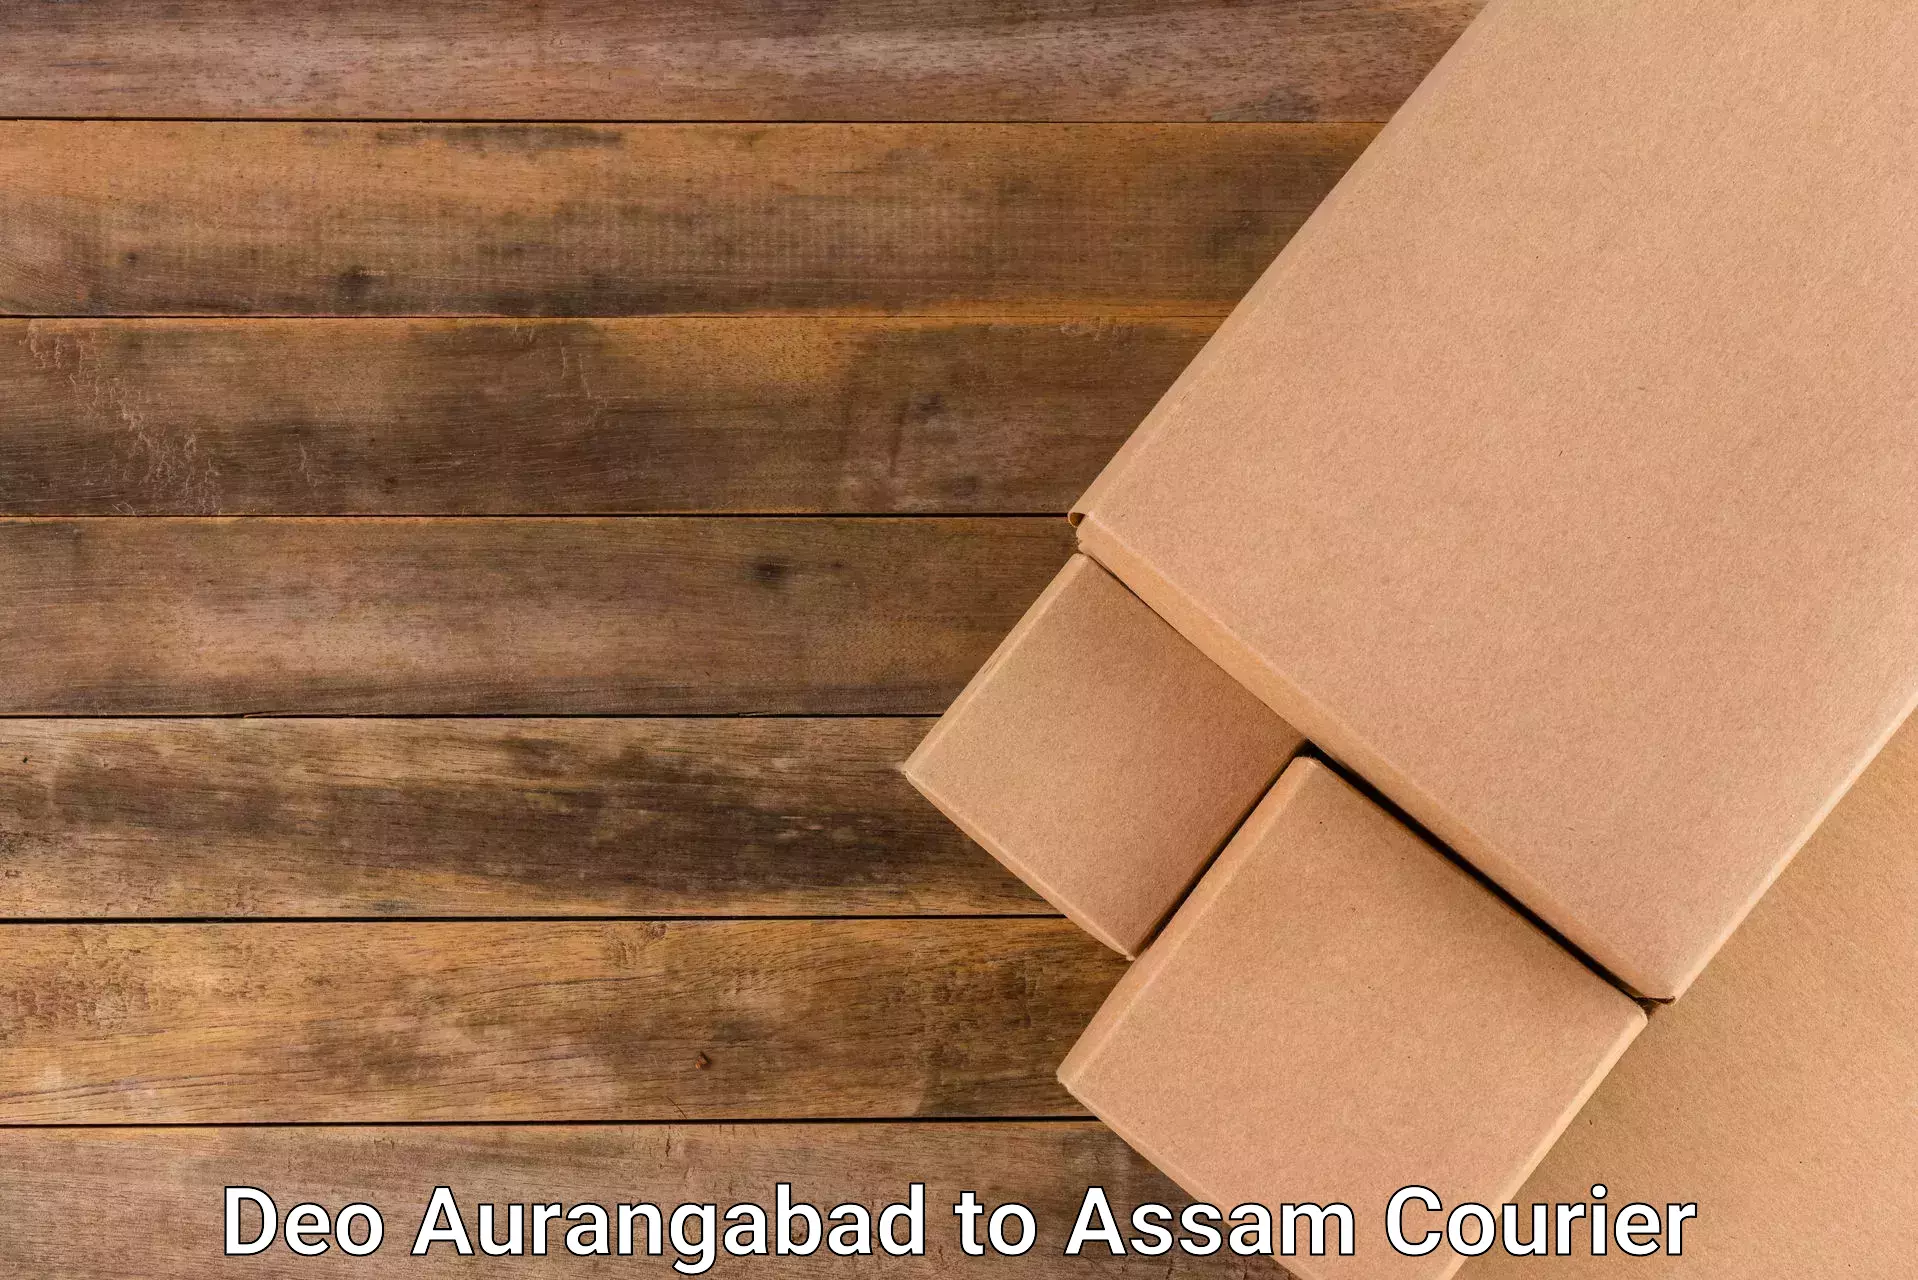 Reliable courier service Deo Aurangabad to Chariduar